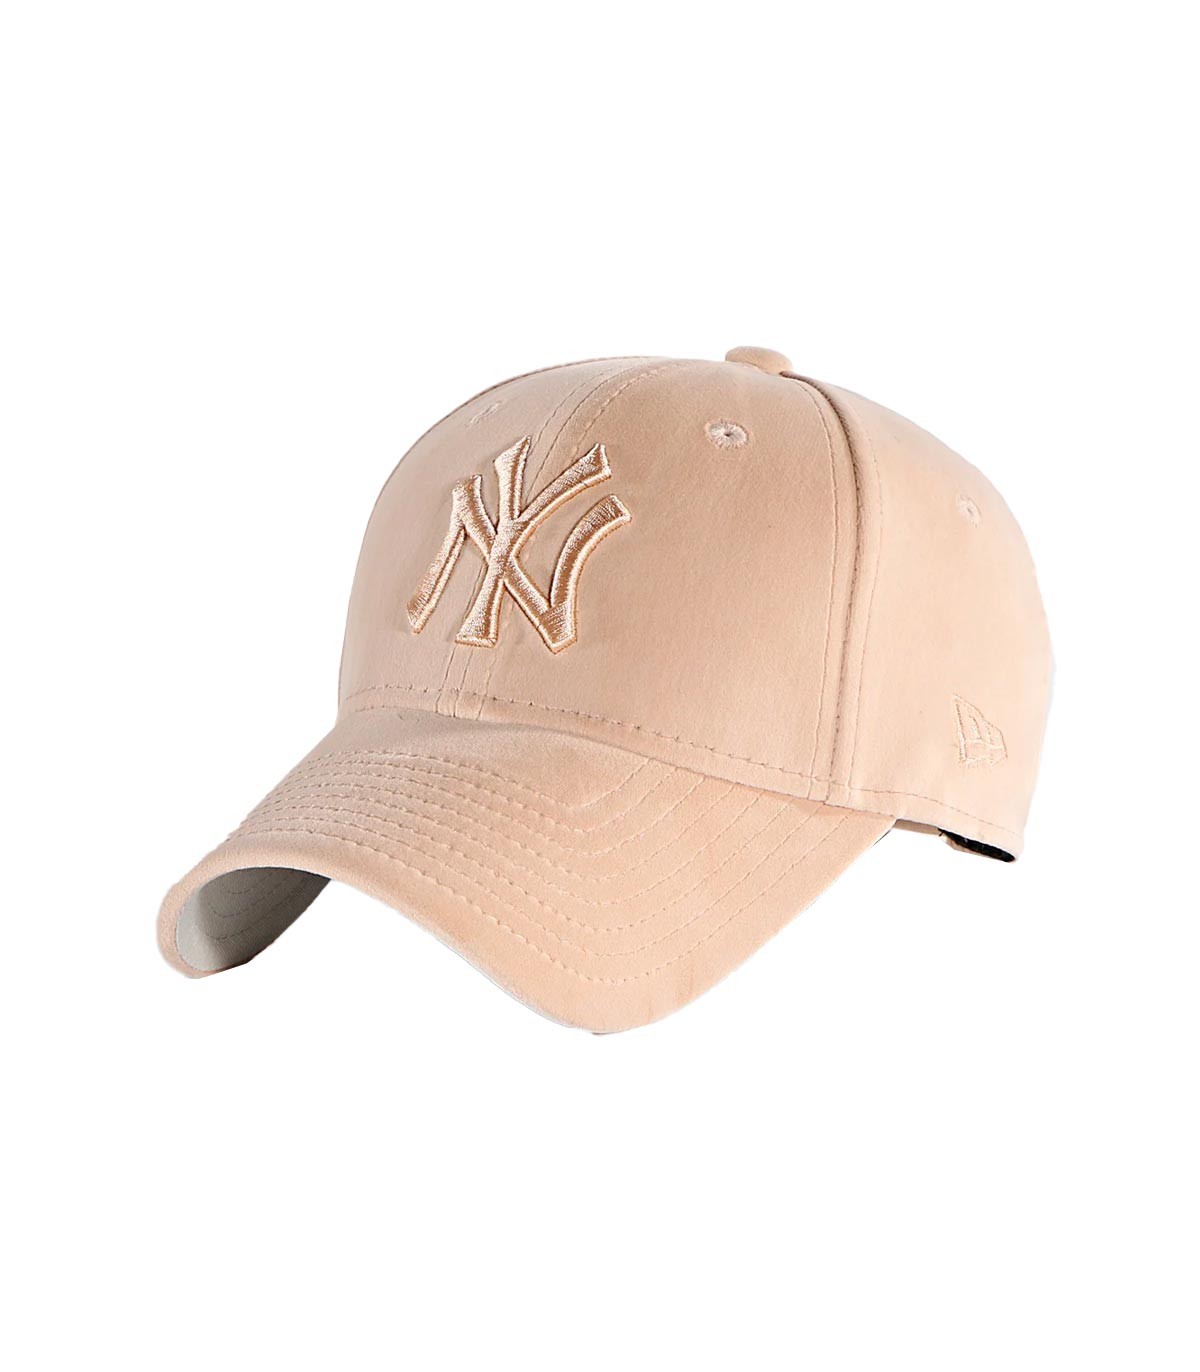 New Era - Gorra New York Yankees - Beige